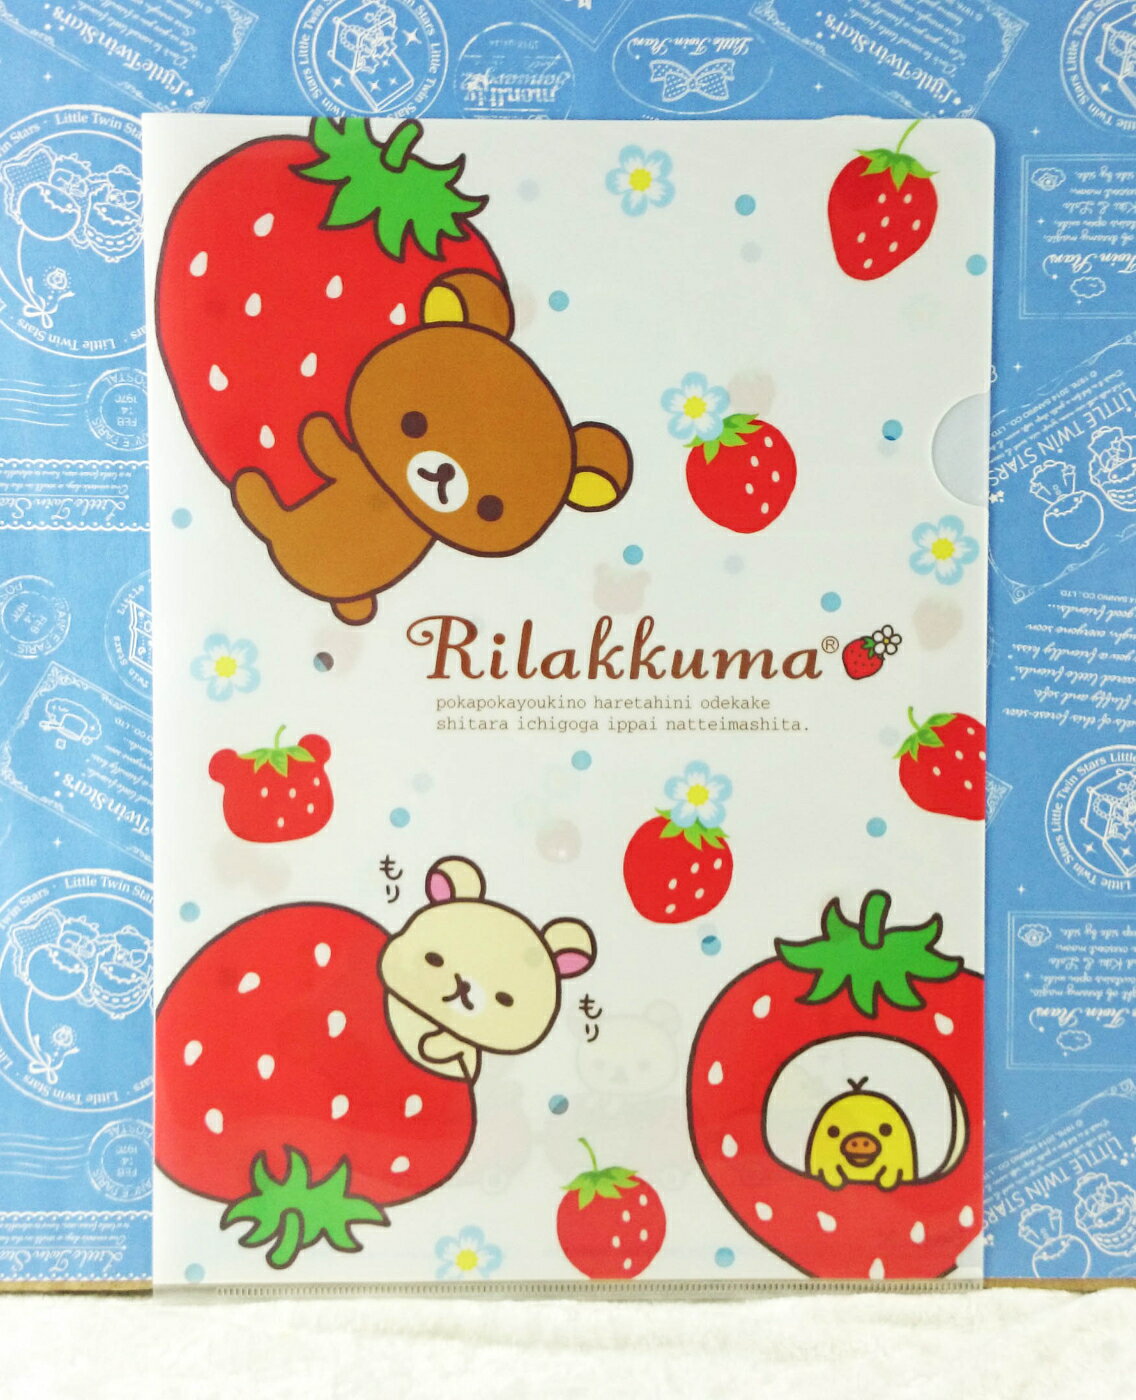 【震撼精品百貨】Rilakkuma San-X 拉拉熊懶懶熊 A4資料夾 巨底草莓 震撼日式精品百貨